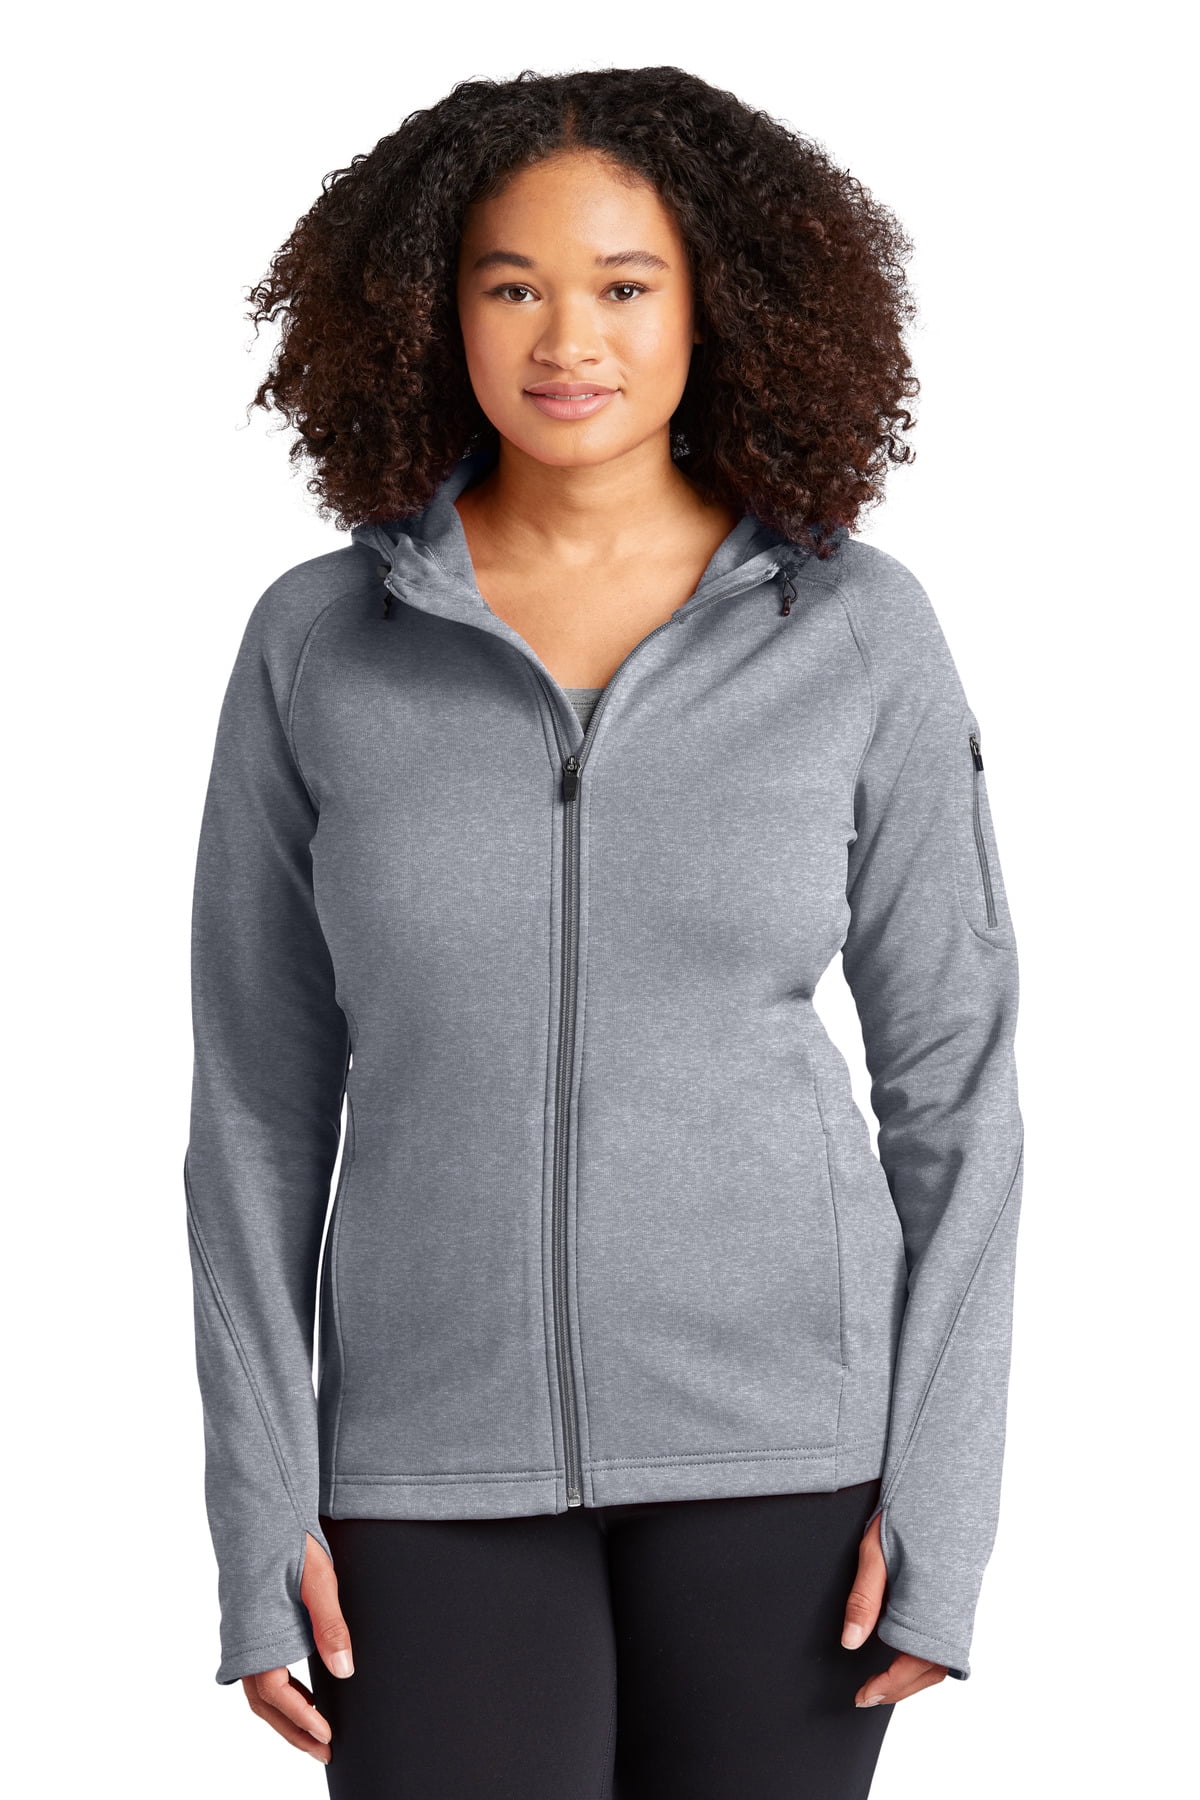 honderd Professor extase Sport-Tek Ladies Tech Fleece Full Zip Hooded Jacket-XL (Grey Heather) -  Walmart.com